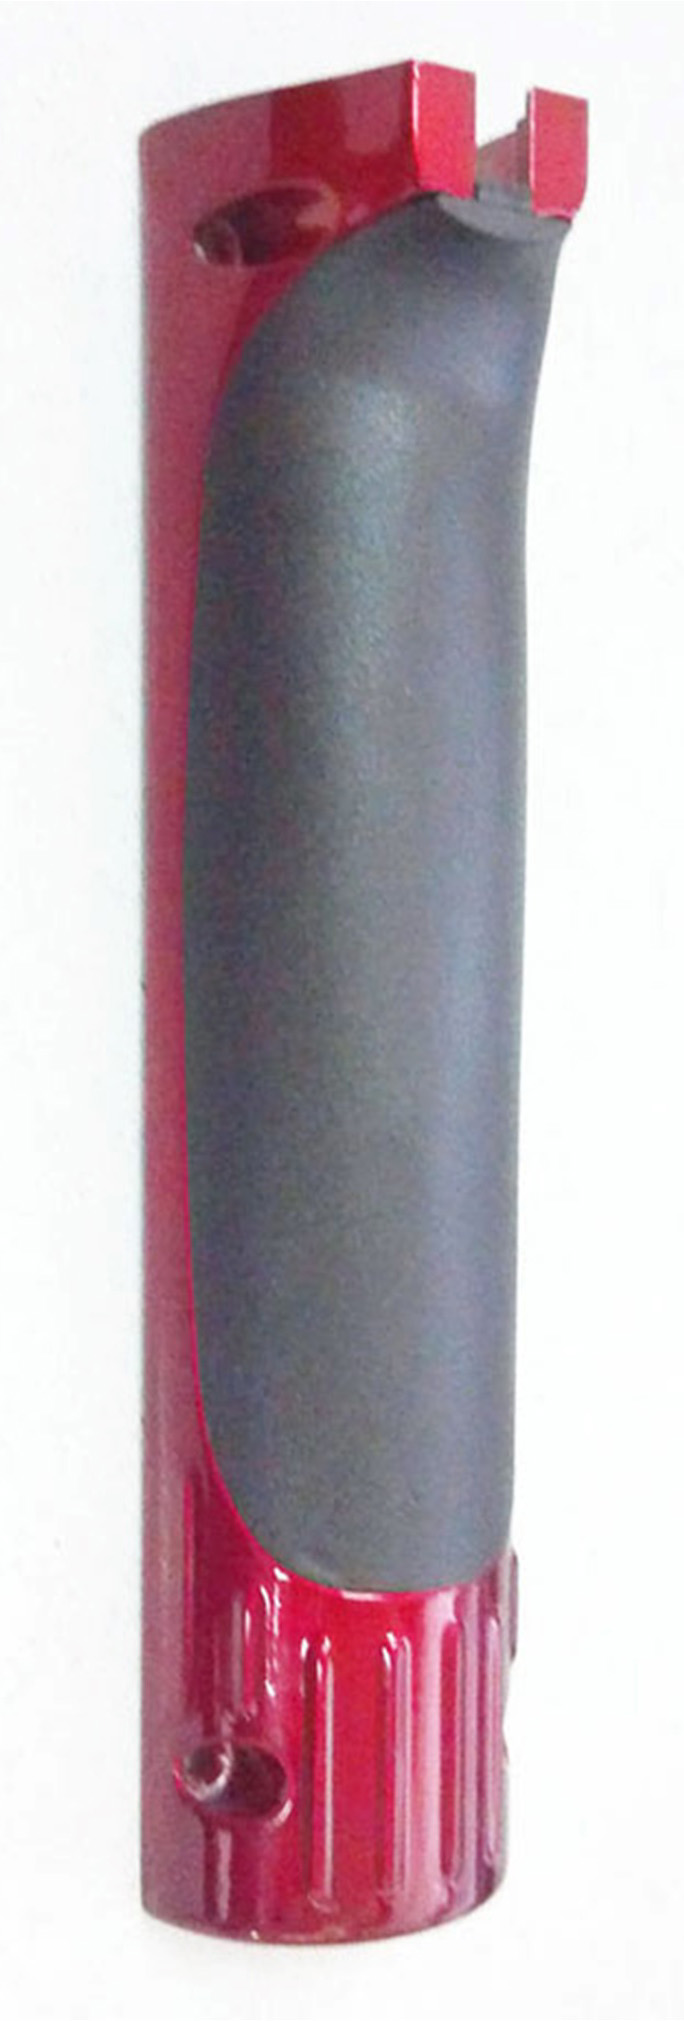 Cubierta de epruner Zenport ep3-p2 ep3 epruner cubierta inferior de reemplazo para podadora eléctrica alimentada por batería, 9